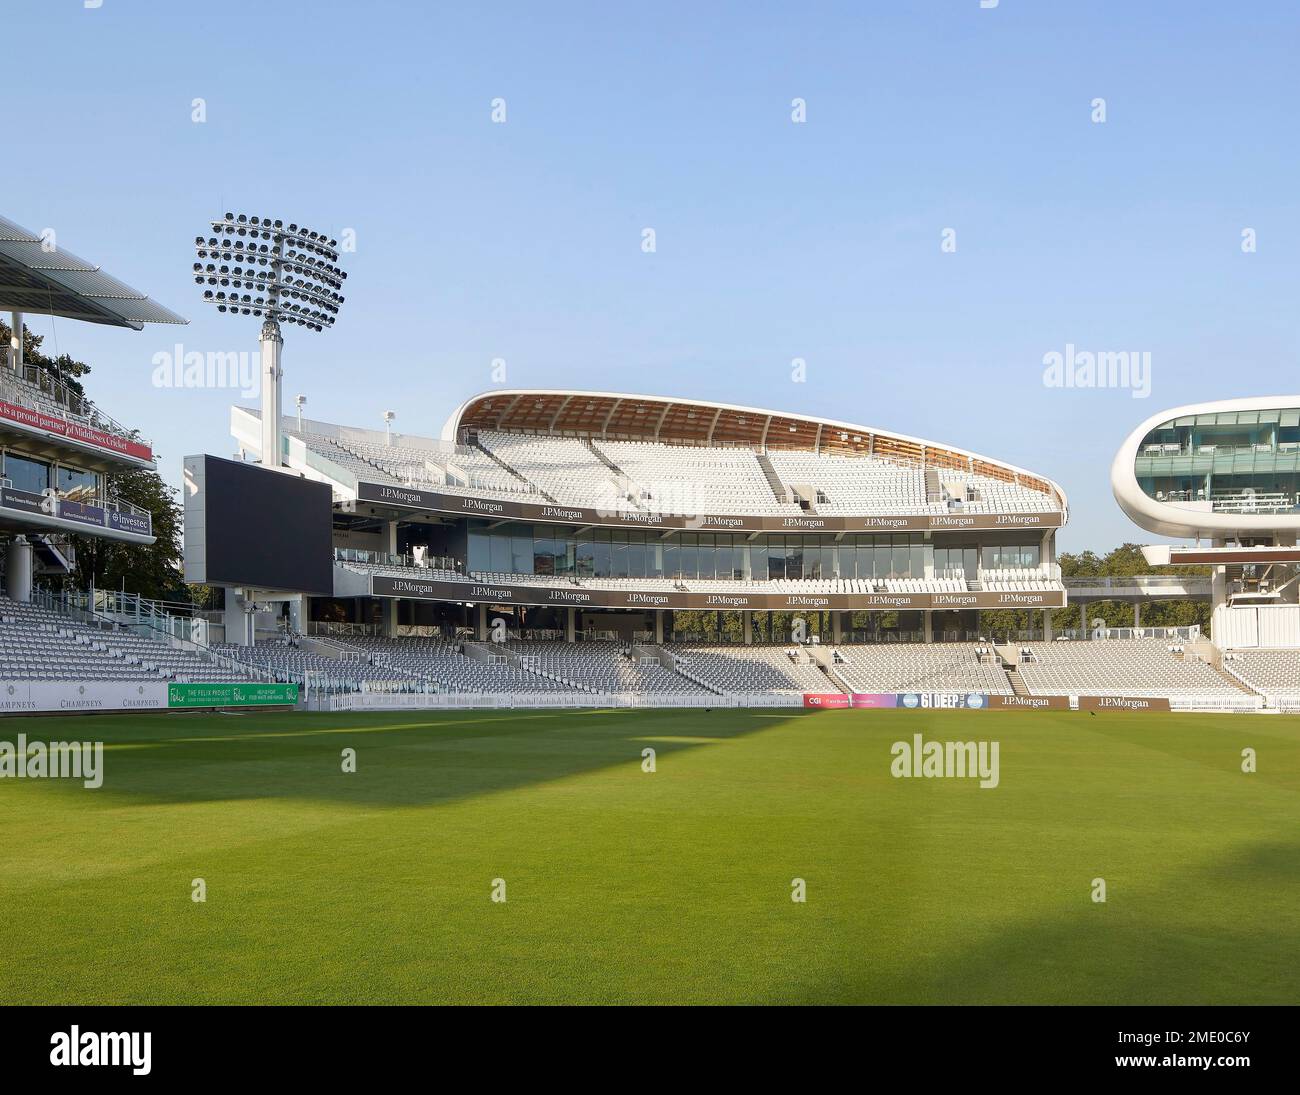 Vue oblique sur le terrain de cricket avec des stands. Lord's Cricket Ground, Londres, Royaume-Uni. Architecte : Wilkinson Eyre Architects, 2021. Banque D'Images